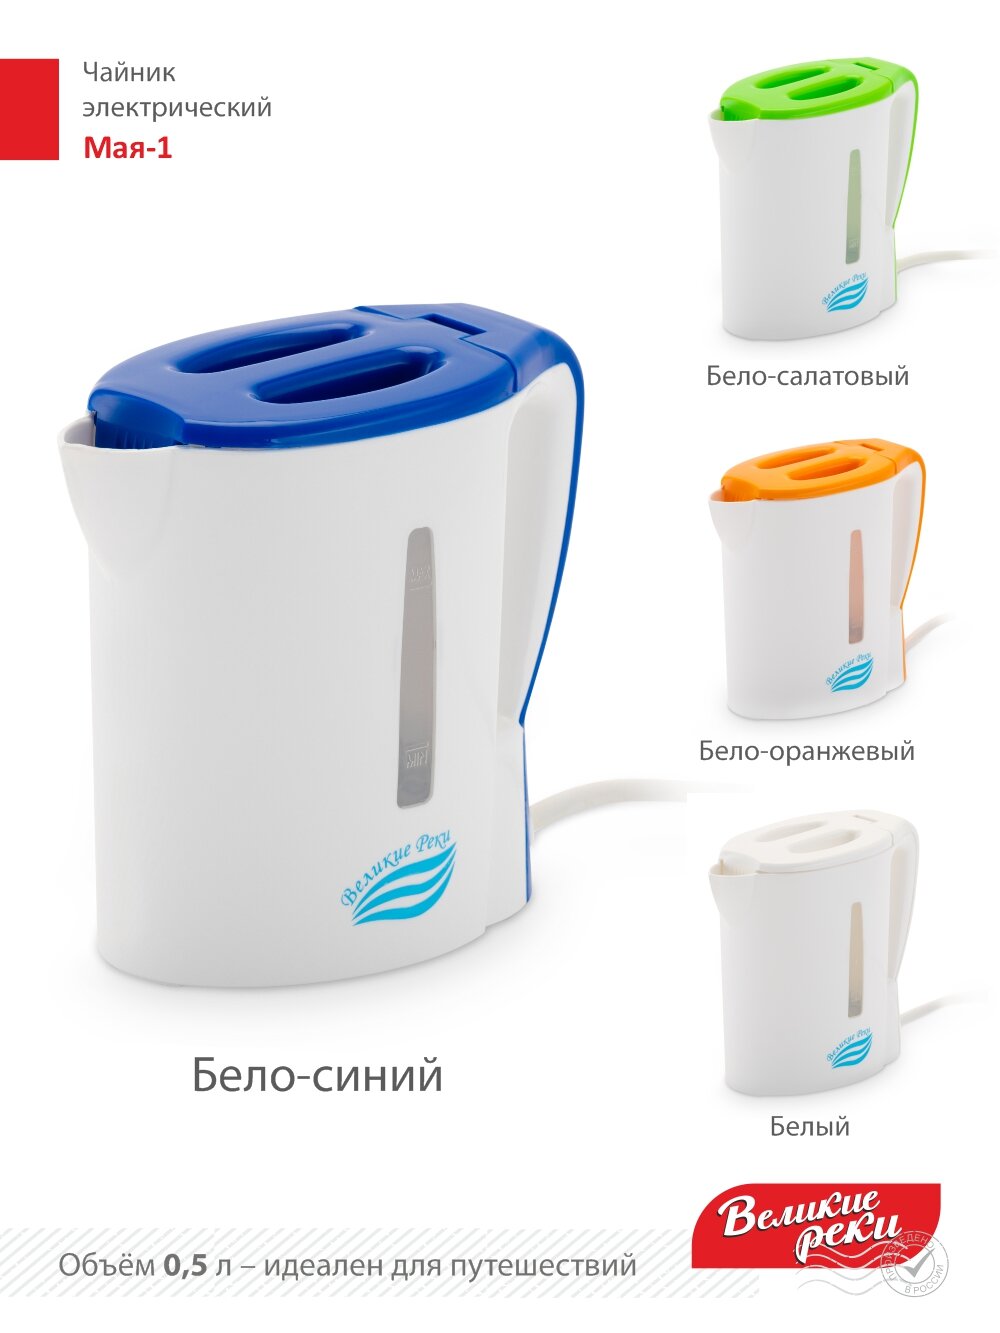 Чайник электрический Великие Реки Мая-1 бело-синий, 0,5 л, пластик, 500 Вт